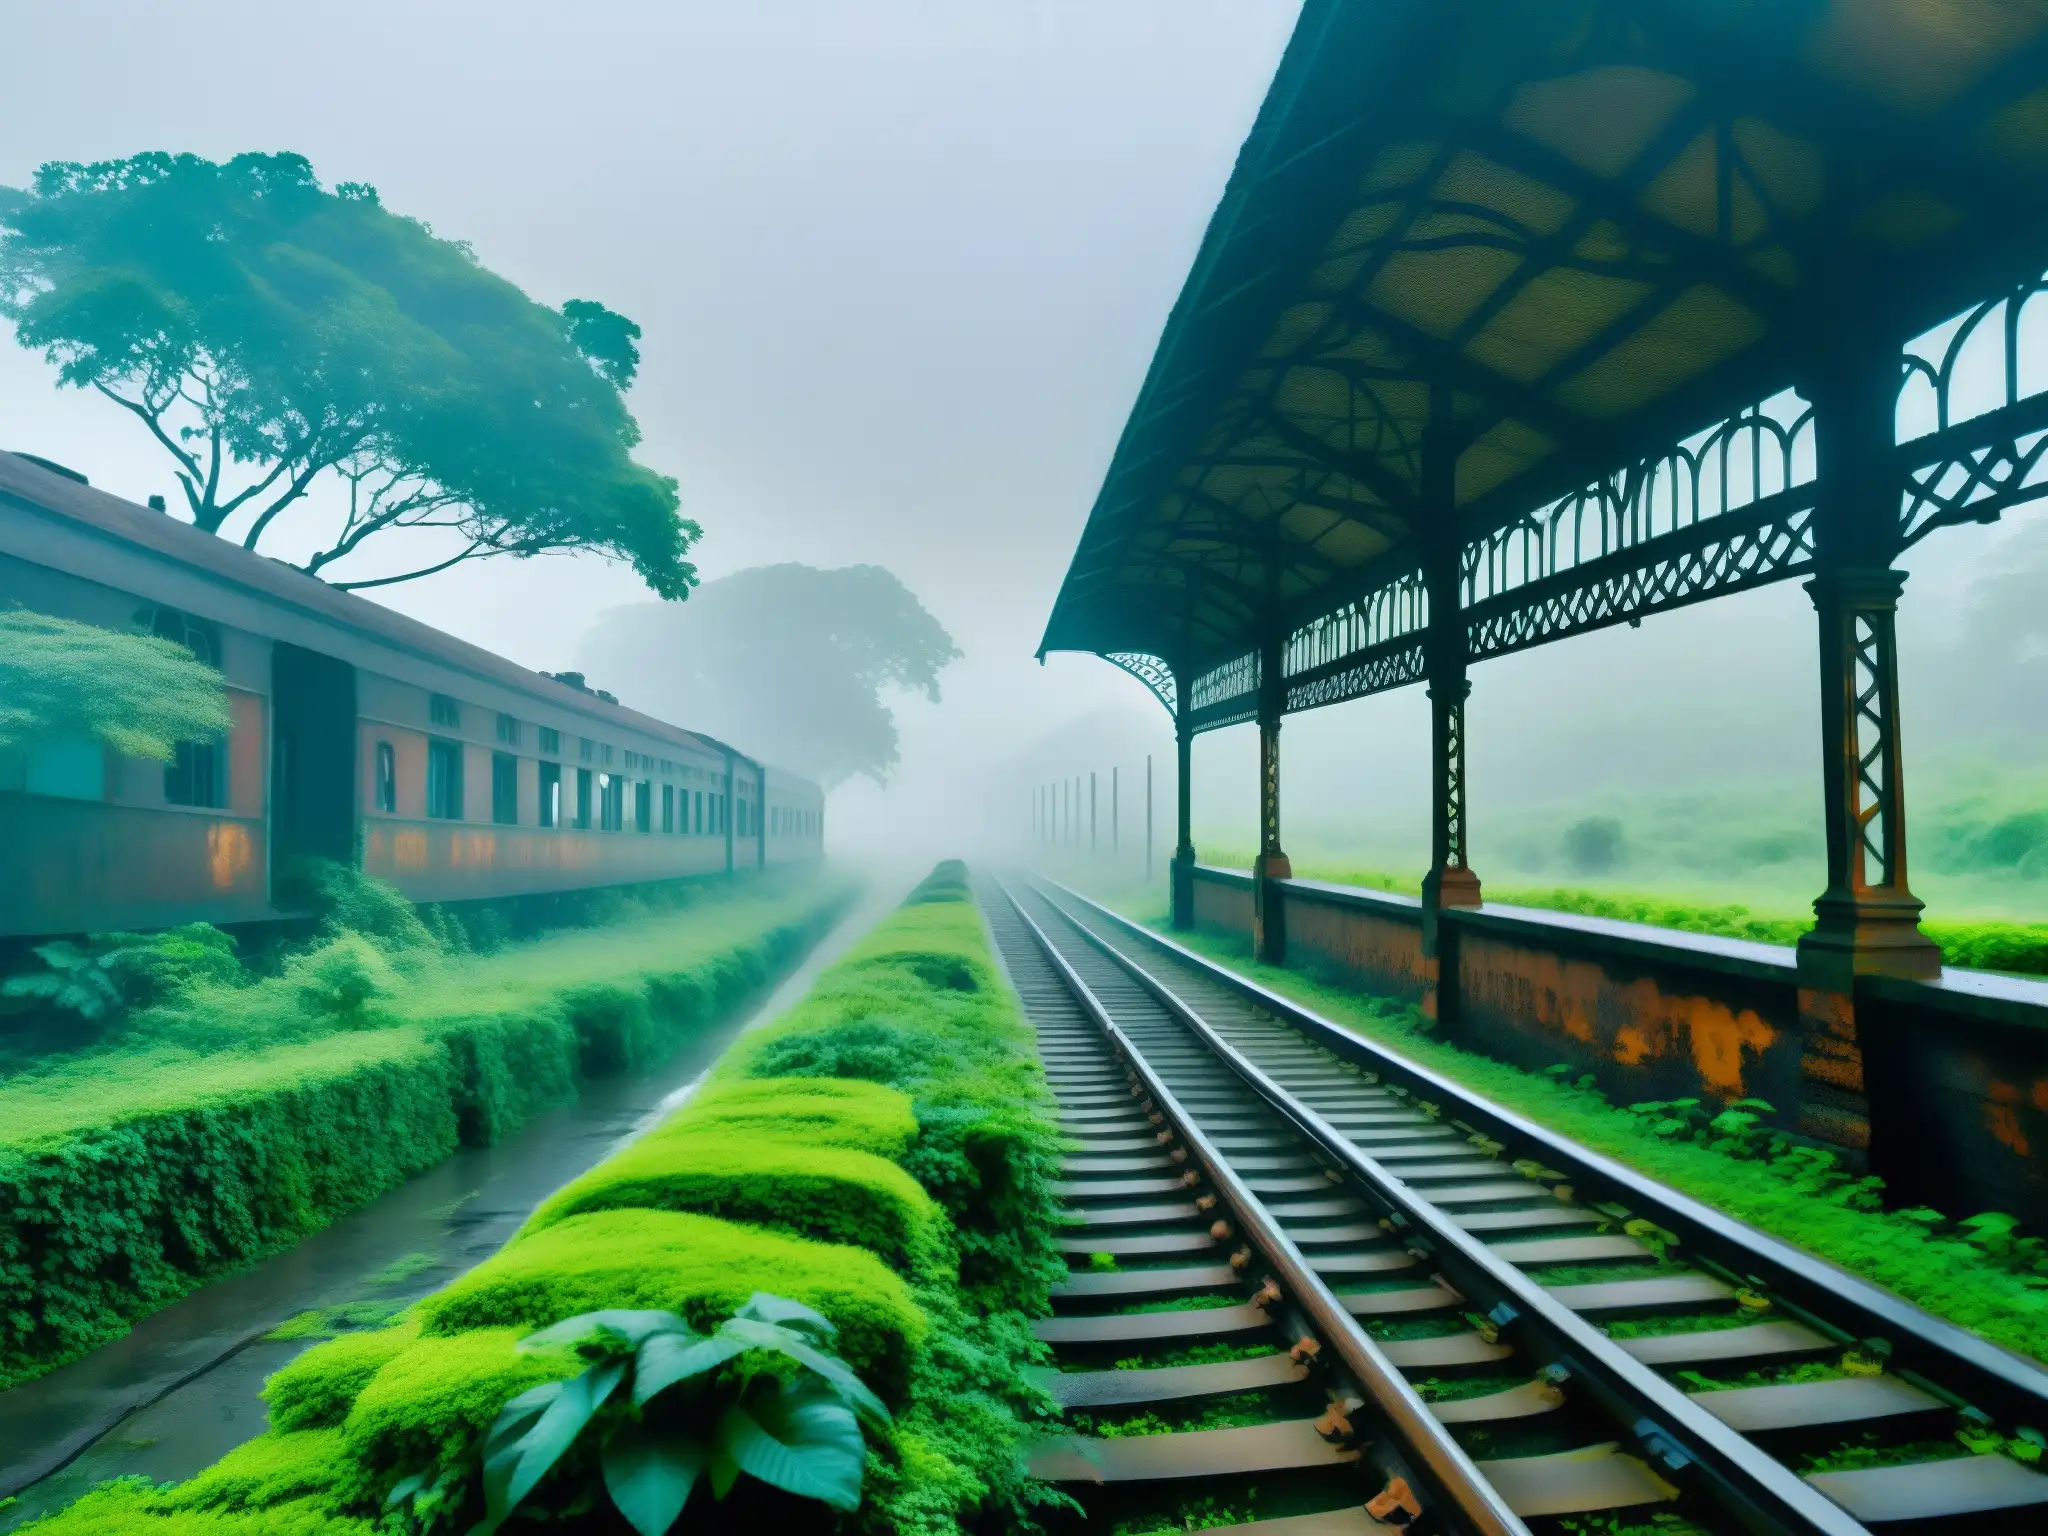 Un misterioso y evocador paisaje de la estación de tren abandonada en la remota jungla de Bengal, India